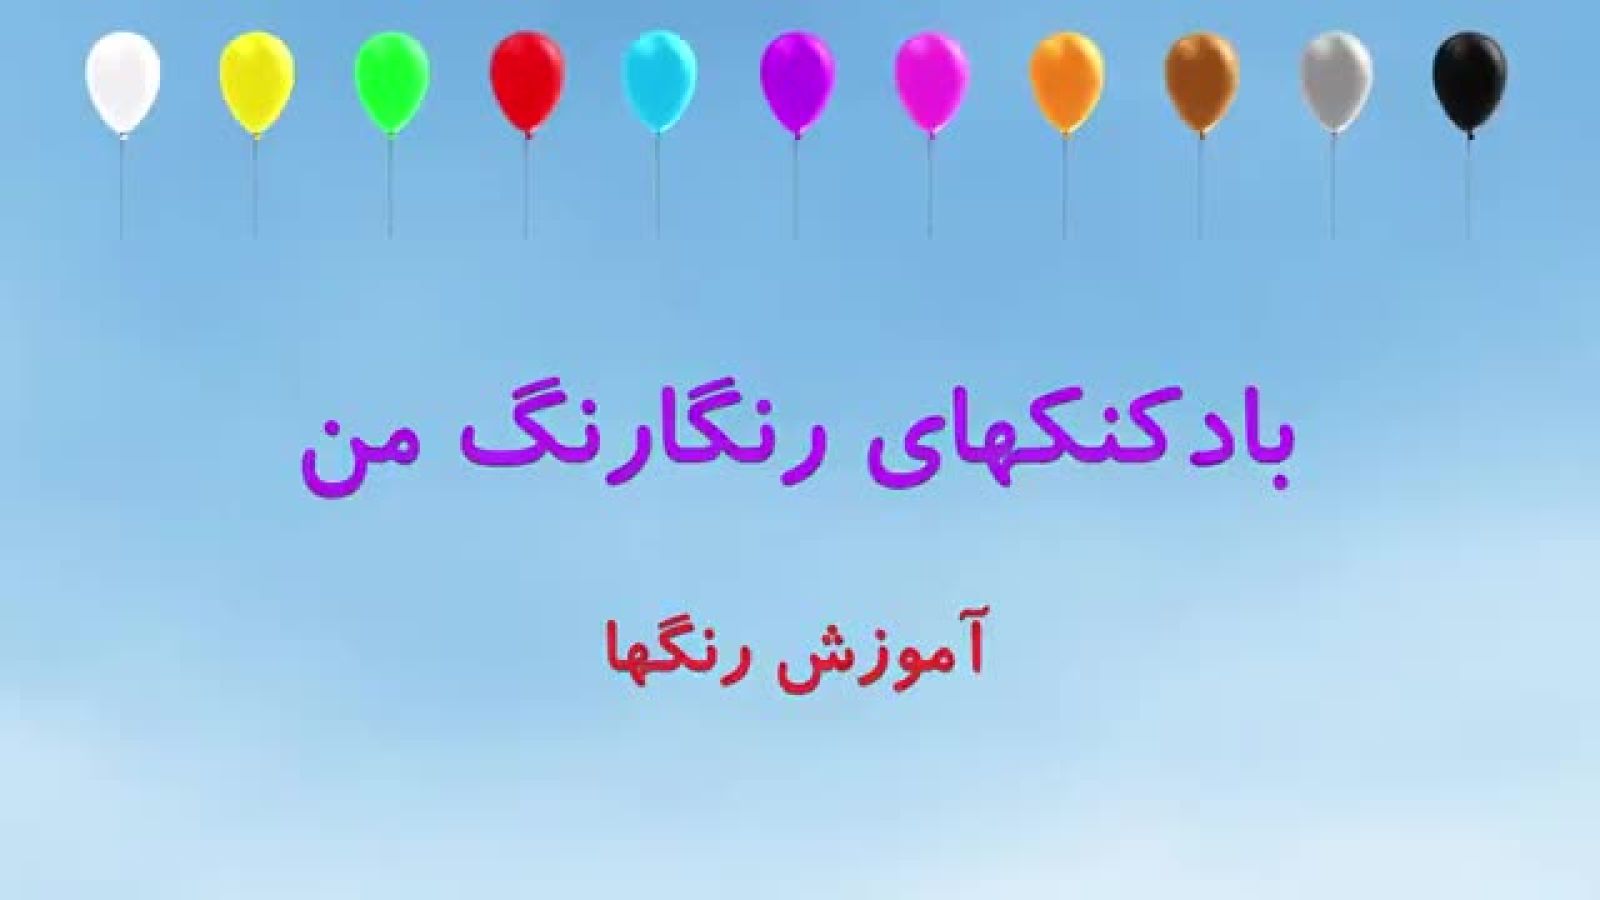 رنگها به زبان فارسی